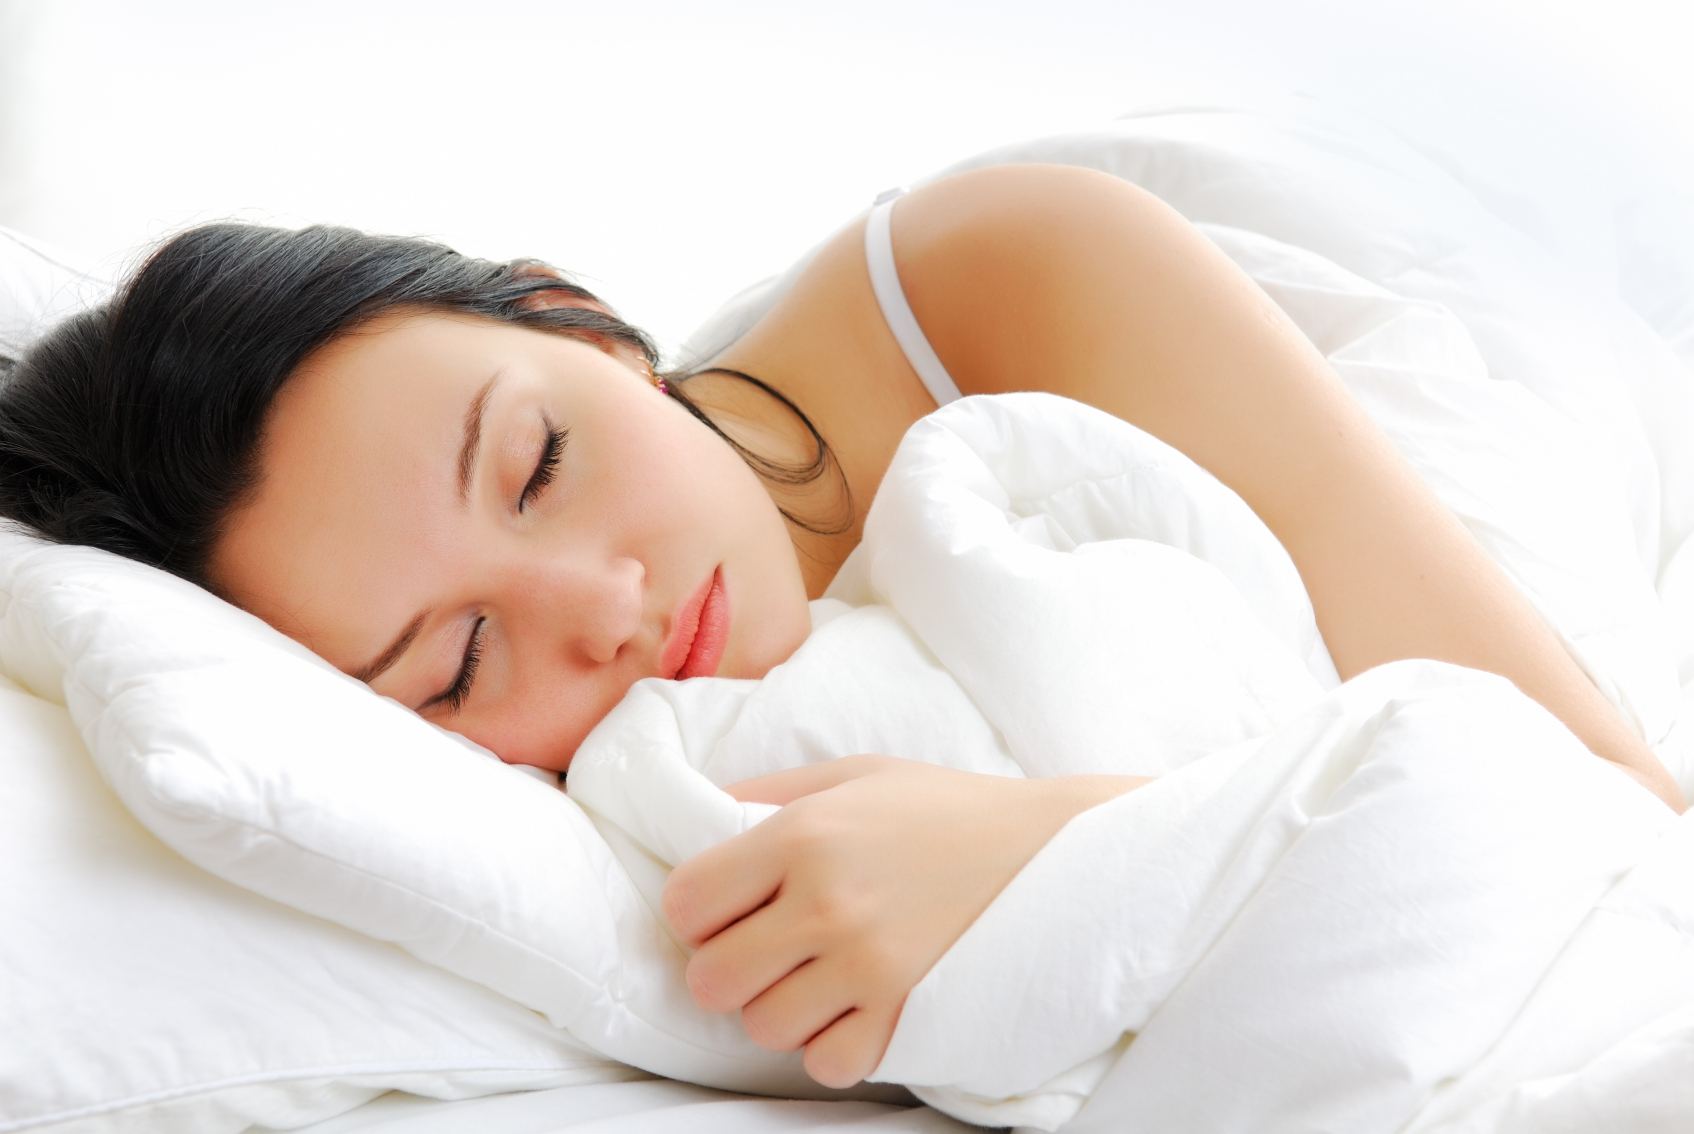   Tắm trước khi ngủ khoảng 90 phút, ở nhiệt độ 40-43°C giúp bạn ngủ sâu giấc hơn vào ban đêm.  